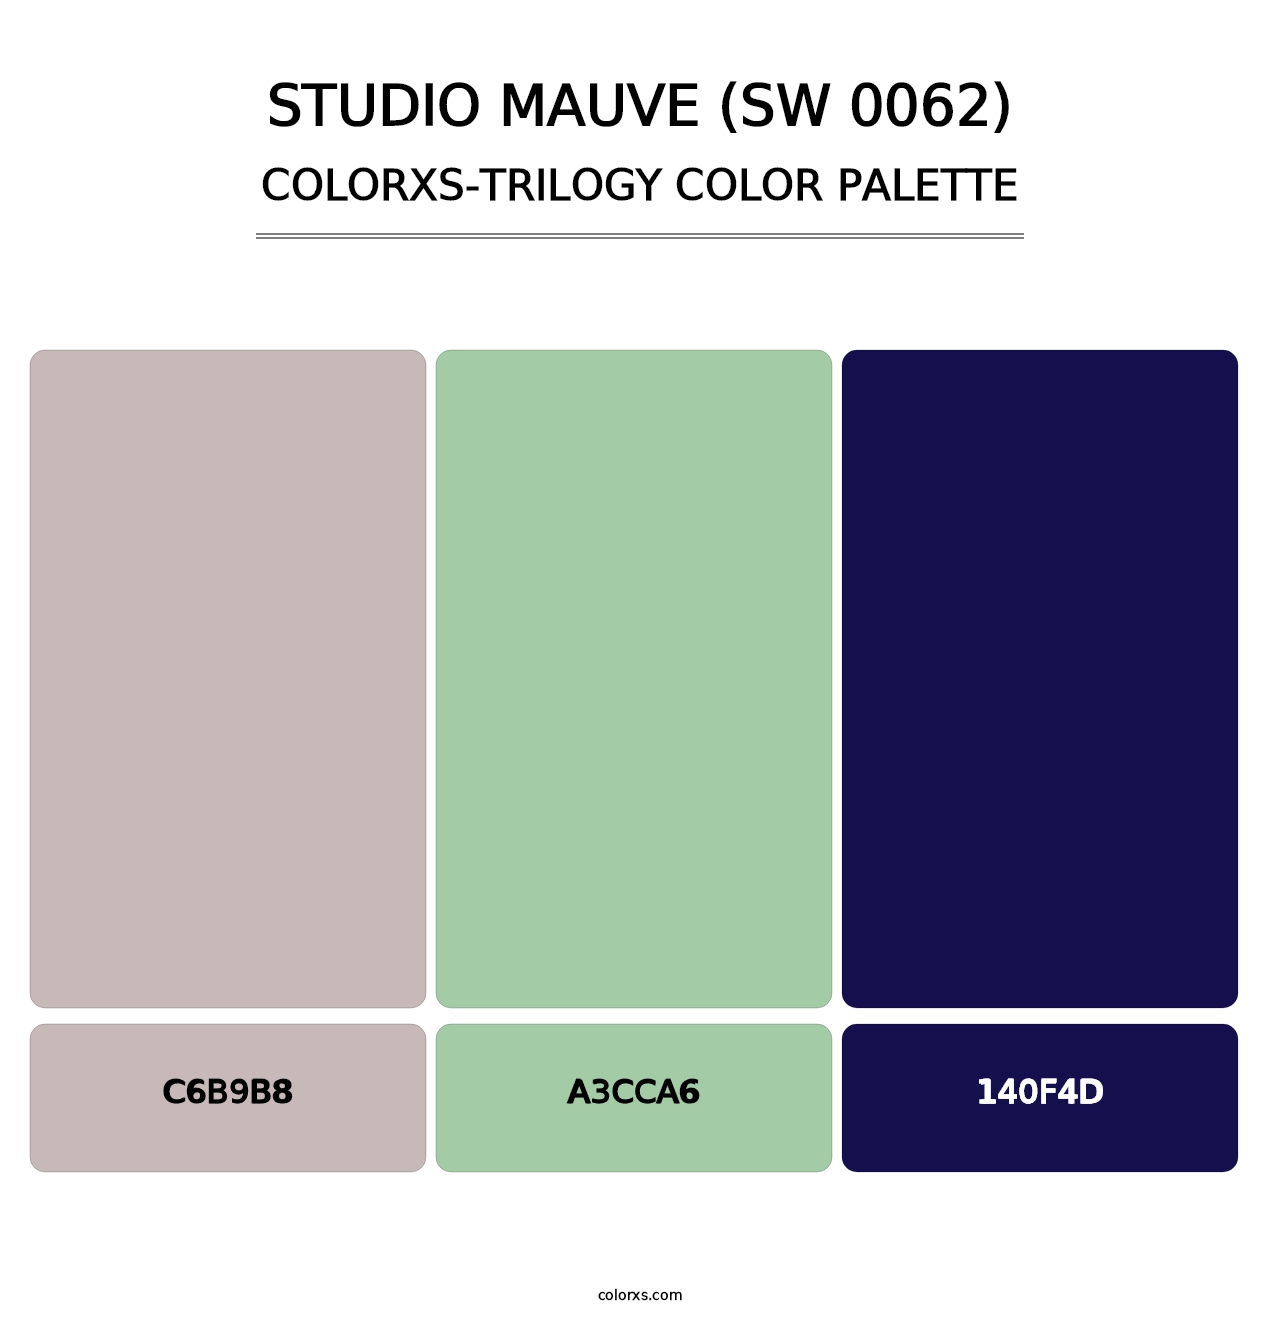 Studio Mauve (SW 0062) - Colorxs Trilogy Palette